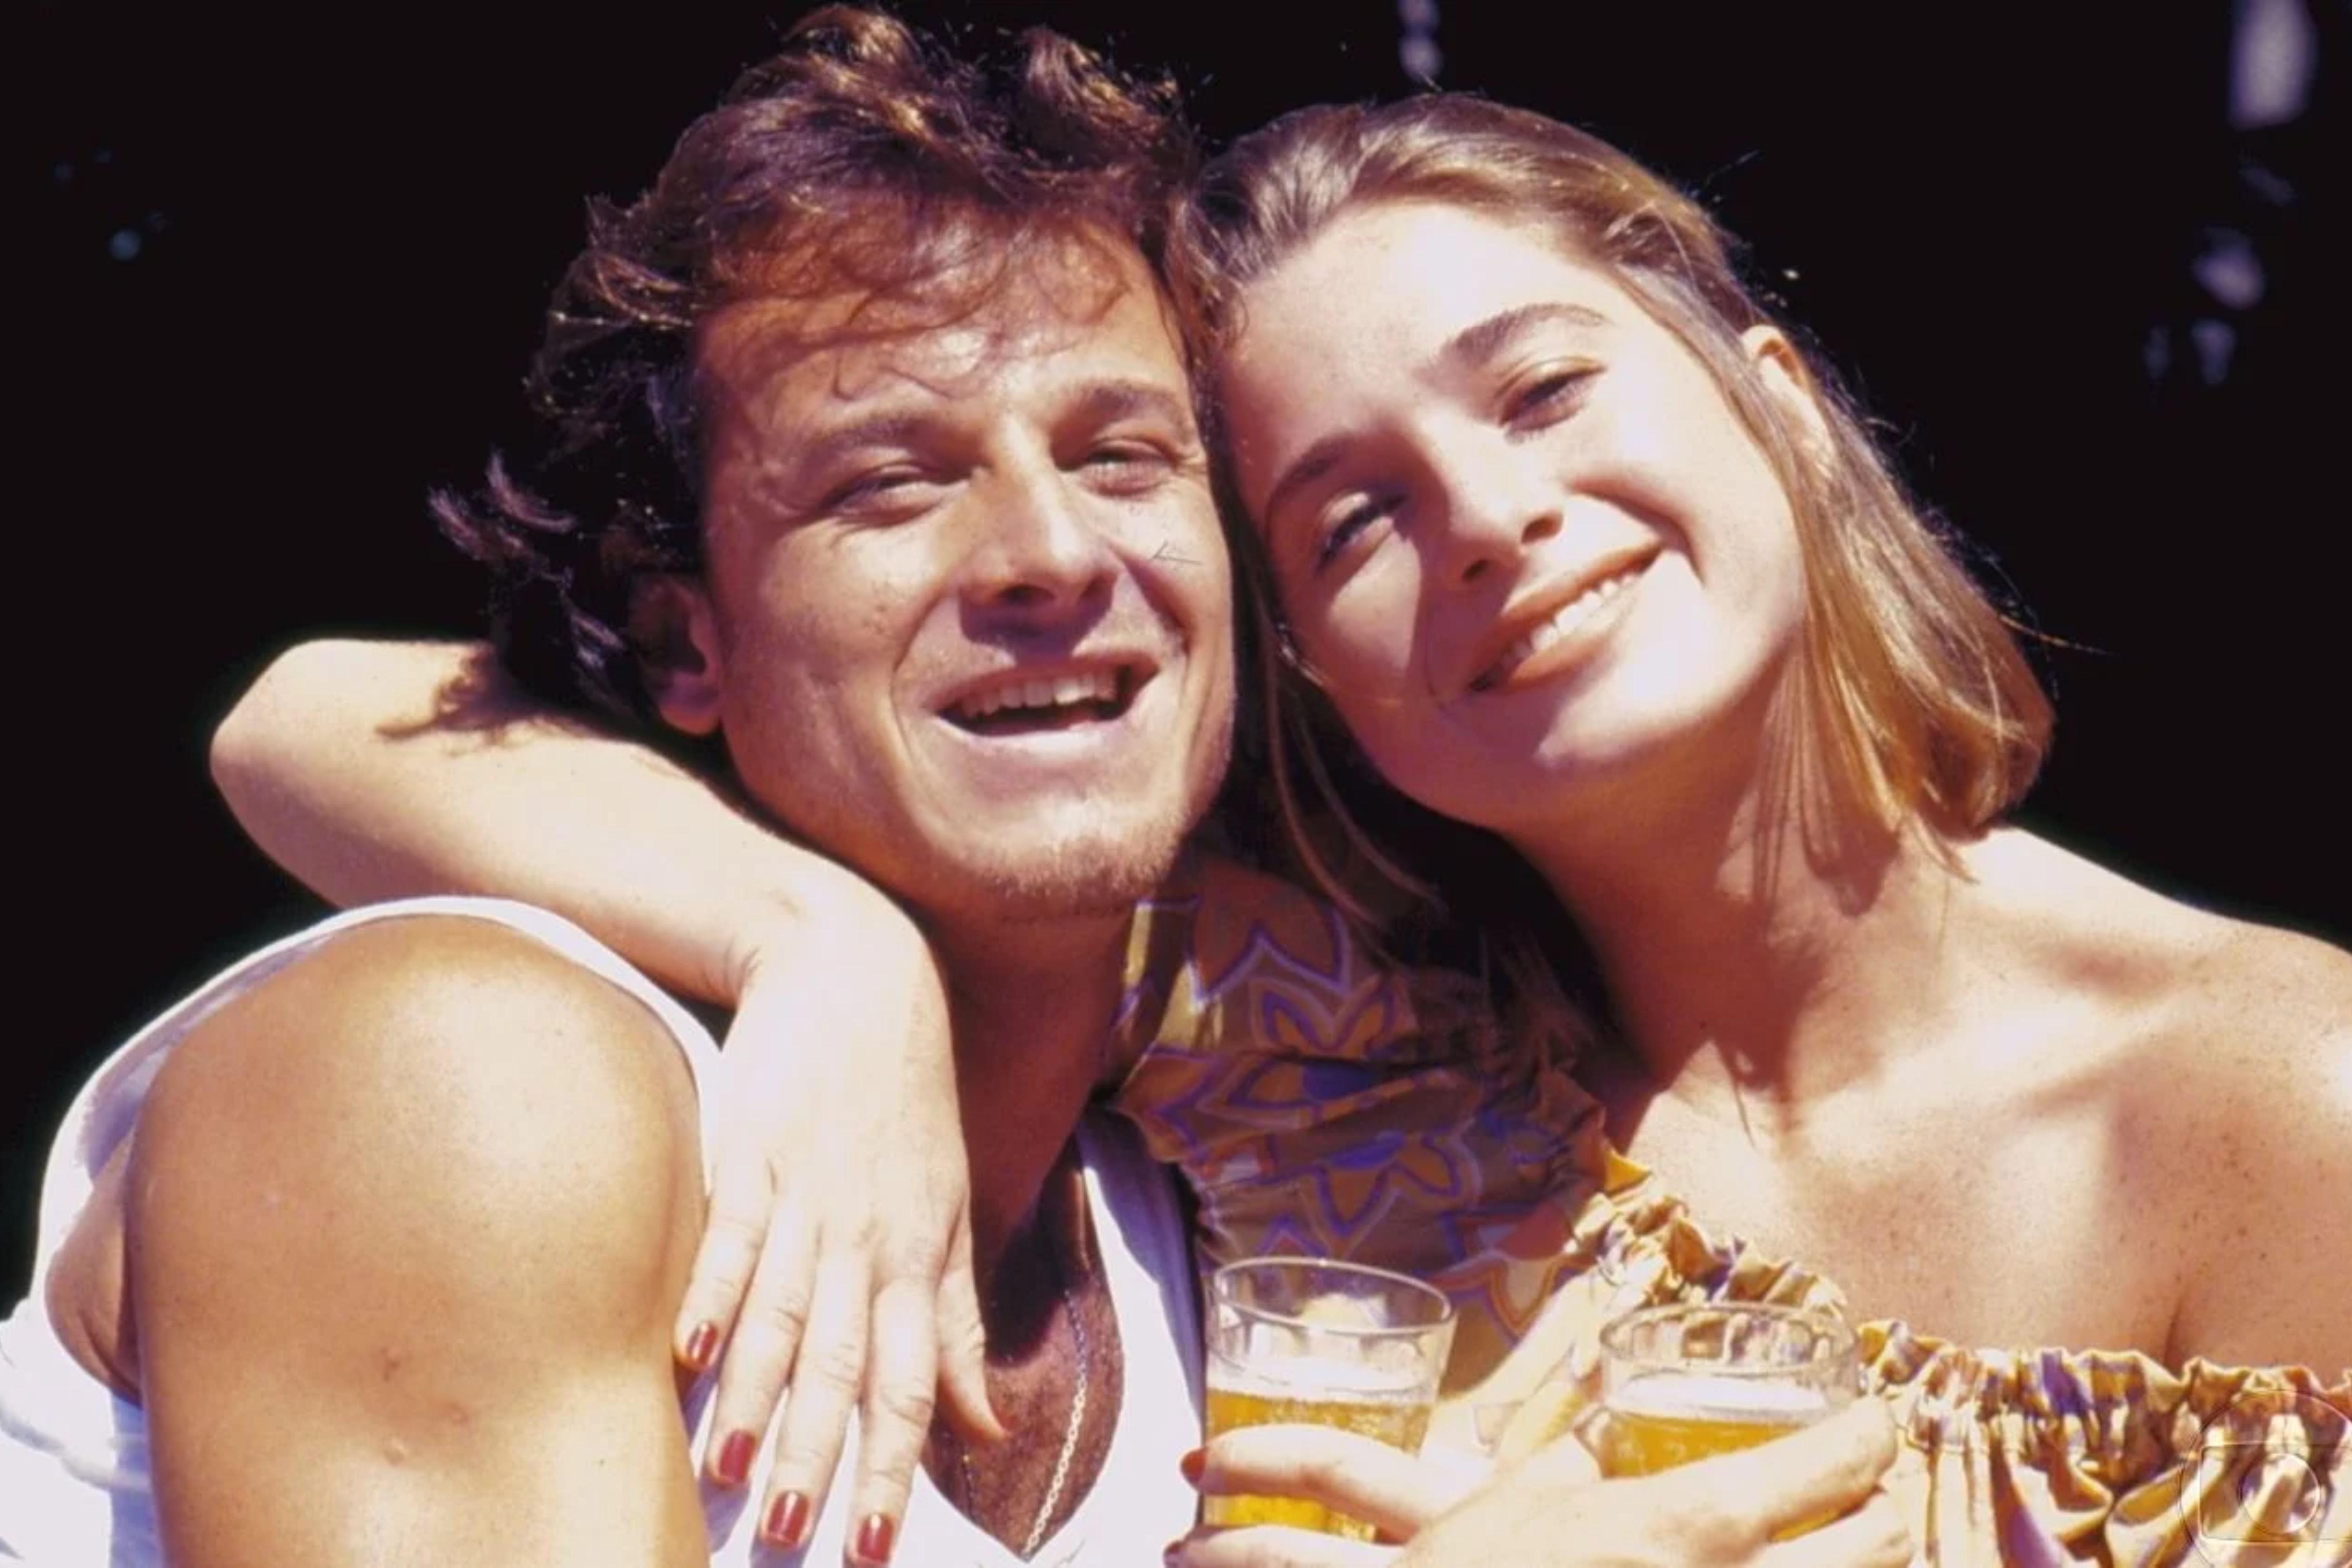  Letícia Spiller e Marcello Novaes começaram o romance durante as gravações da novela "Quatro por Quatro" (1994). Eles ficaram juntos por 5 anos e tiveram um filho, o ator Pedro Novaes TV Globo